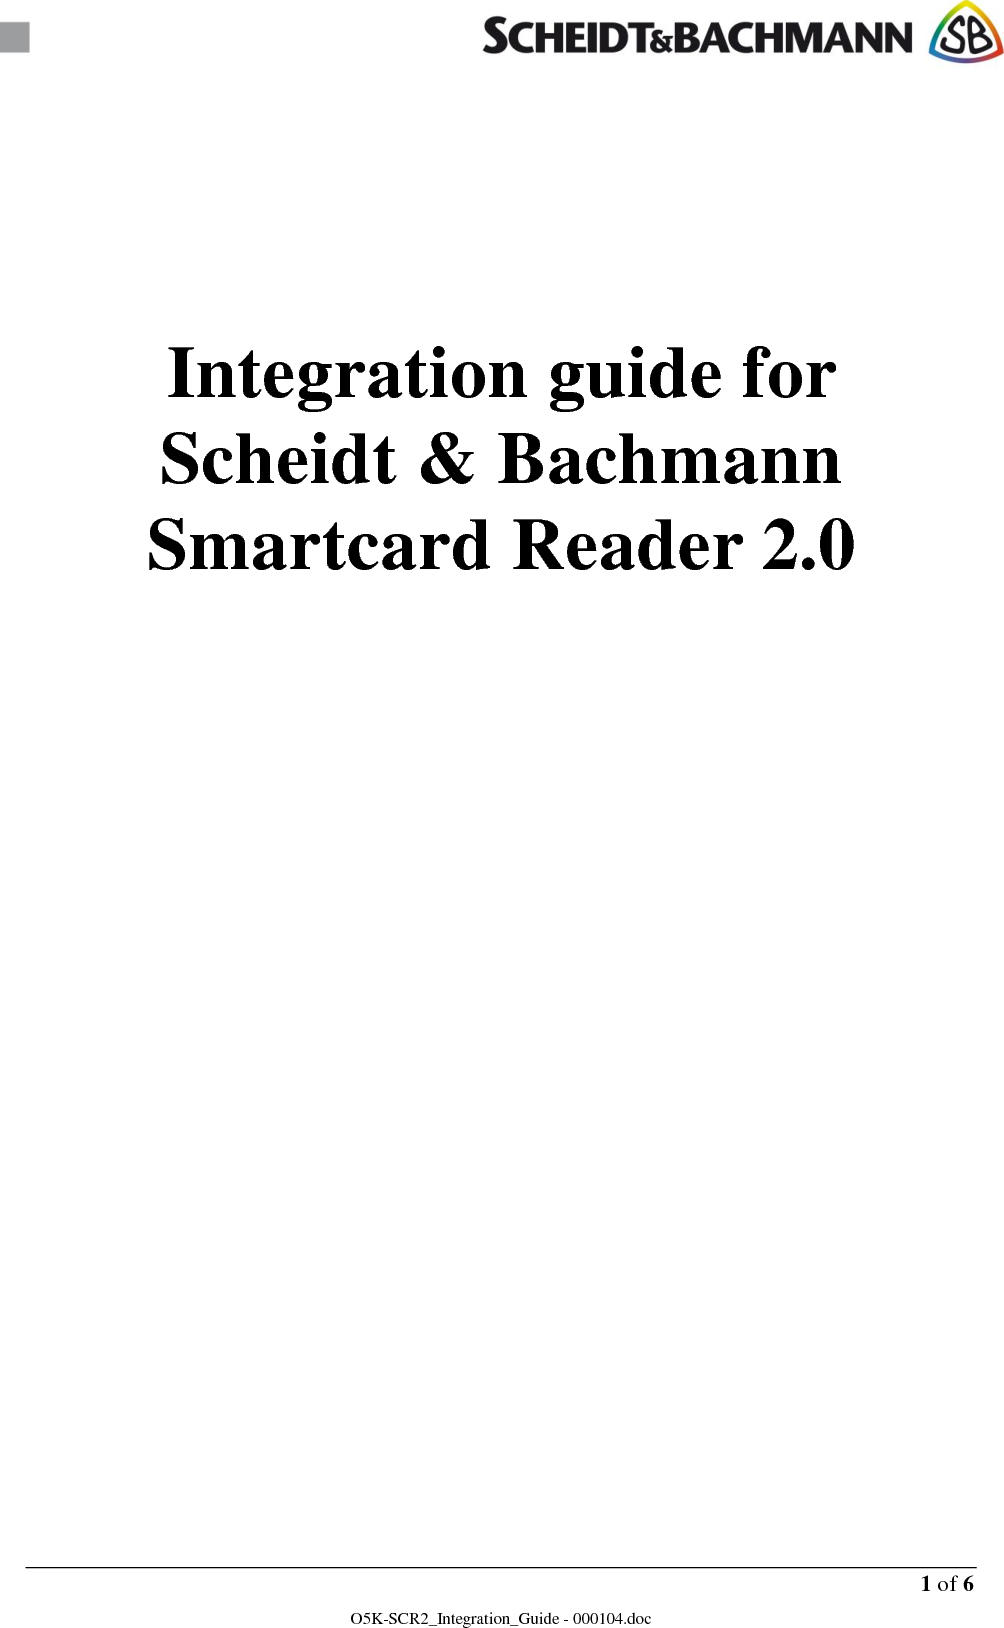      1 of 6 O5K-SCR2_Integration_Guide - 000104.doc      Integration guide for Scheidt &amp; Bachmann Smartcard Reader 2.0            